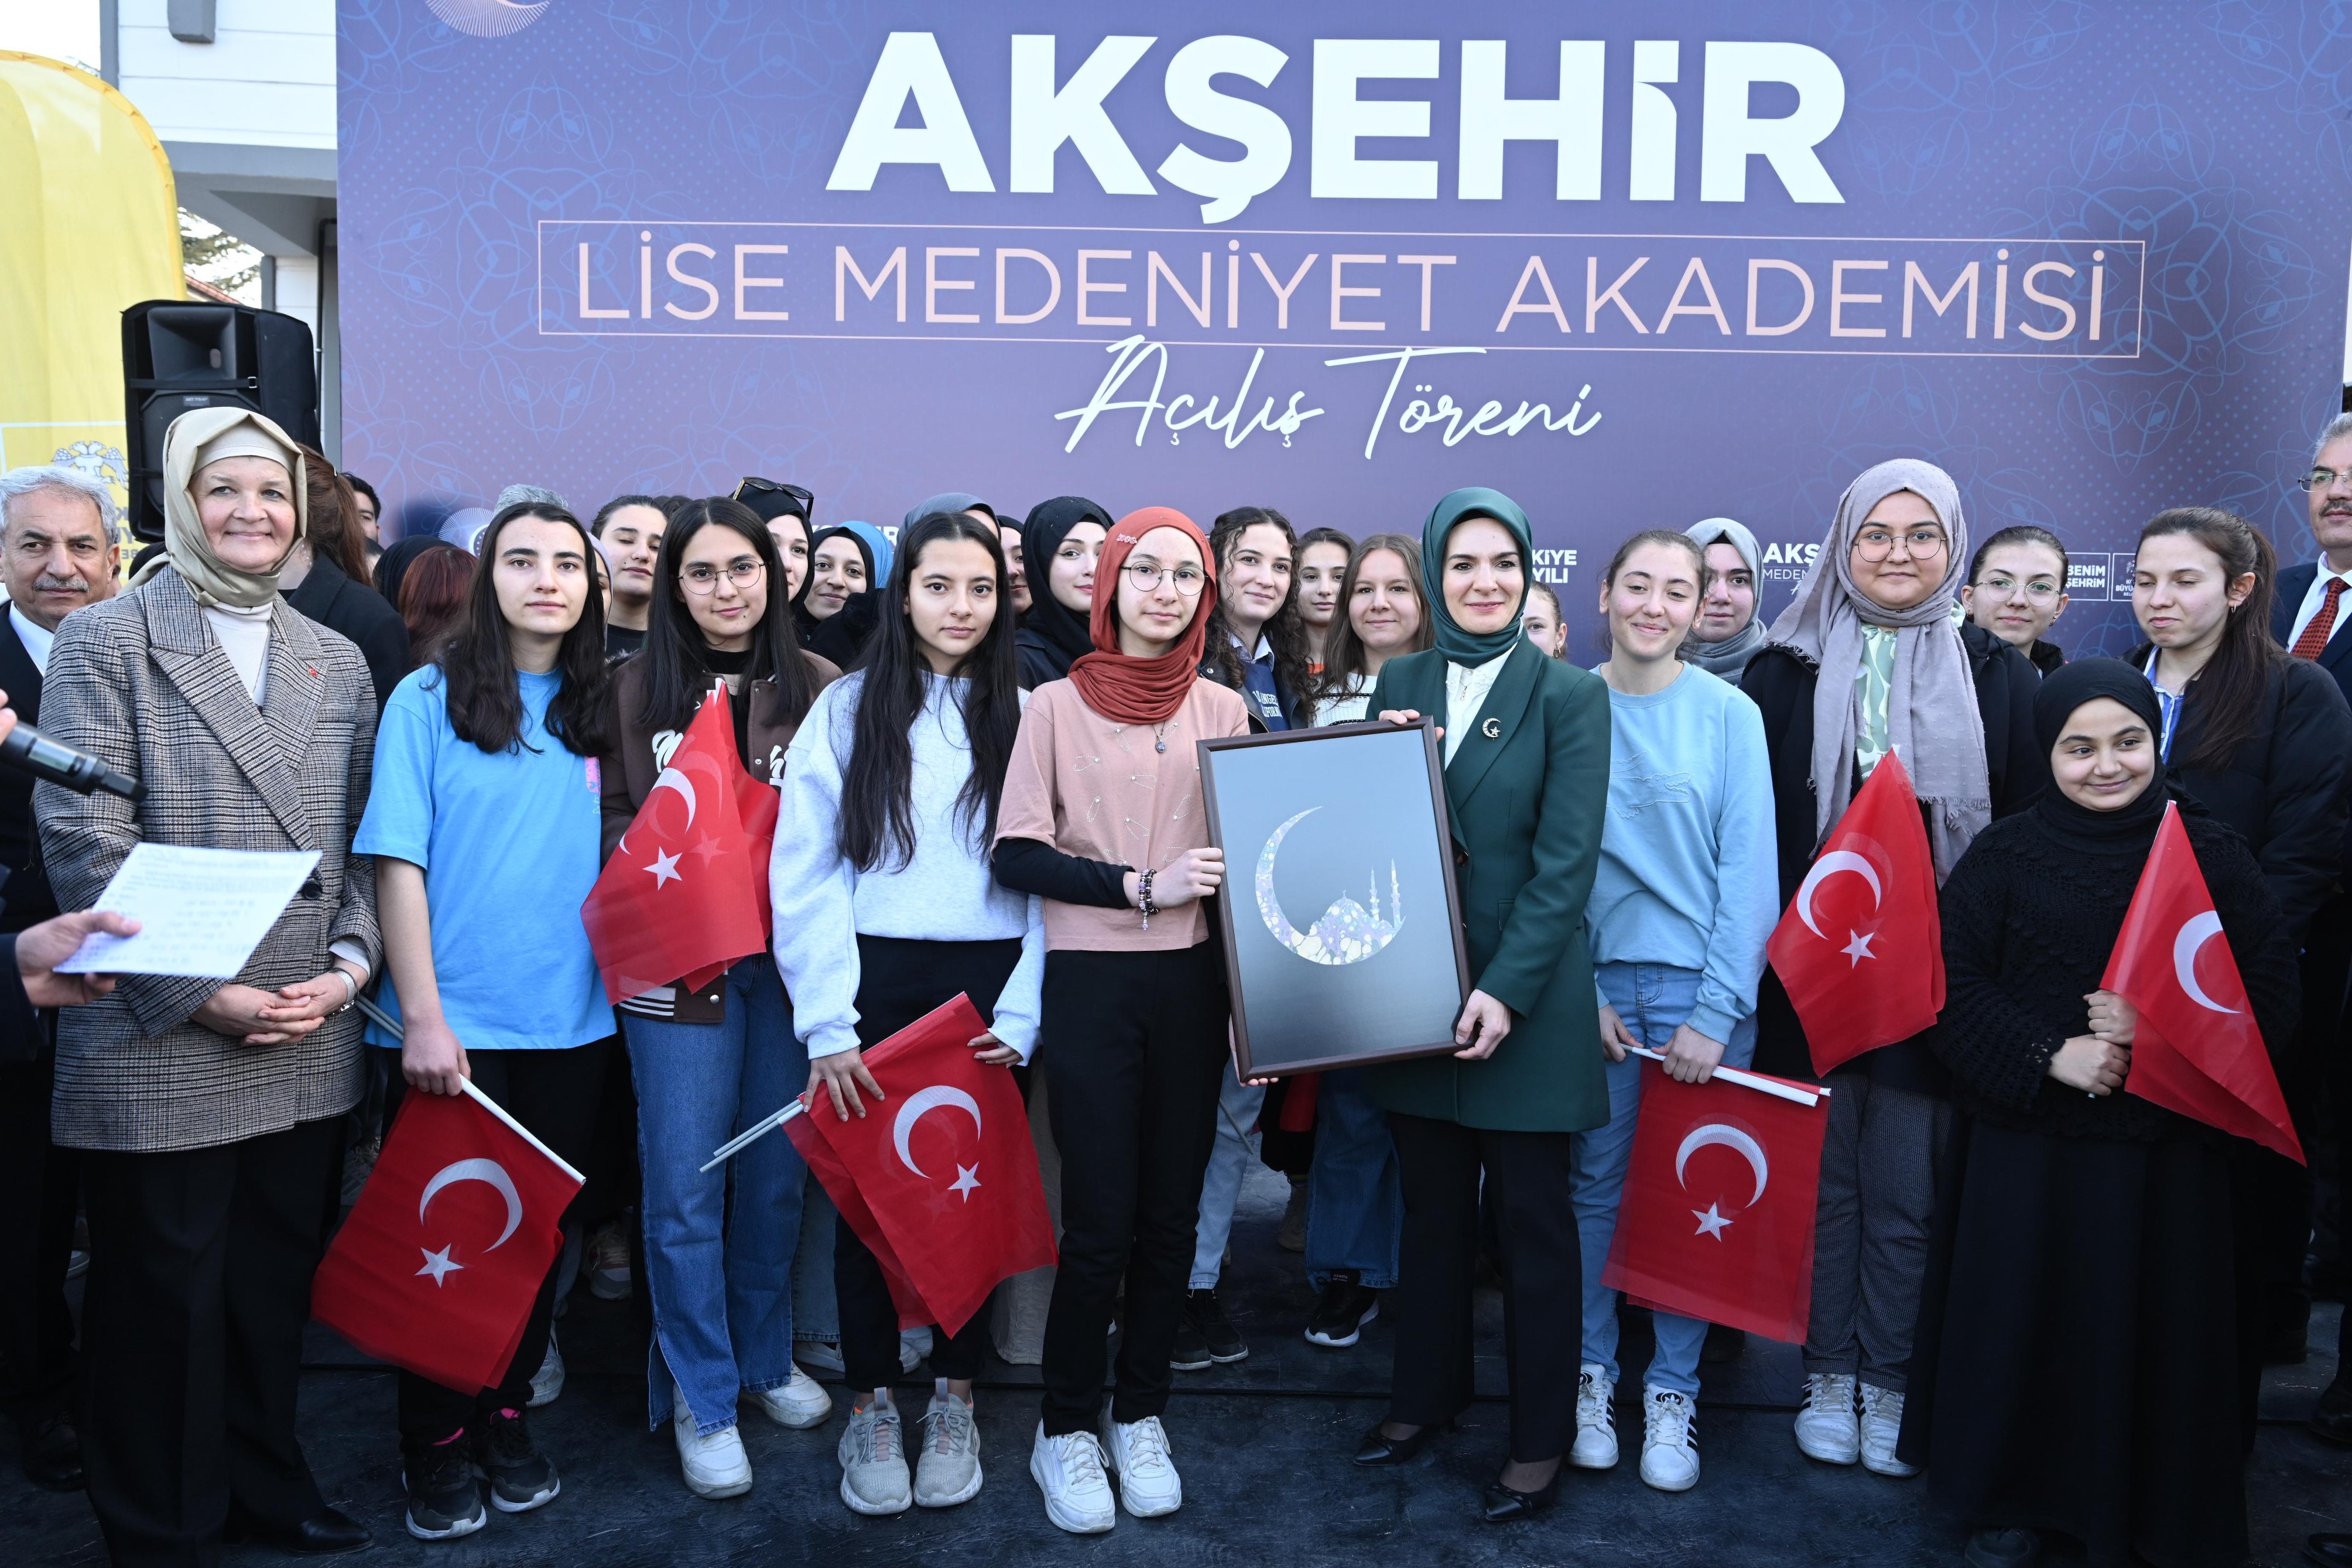 Akşehir Lise Medeniyet Akademisi, Bakan Göktaş’ın katılımıyla açıldı